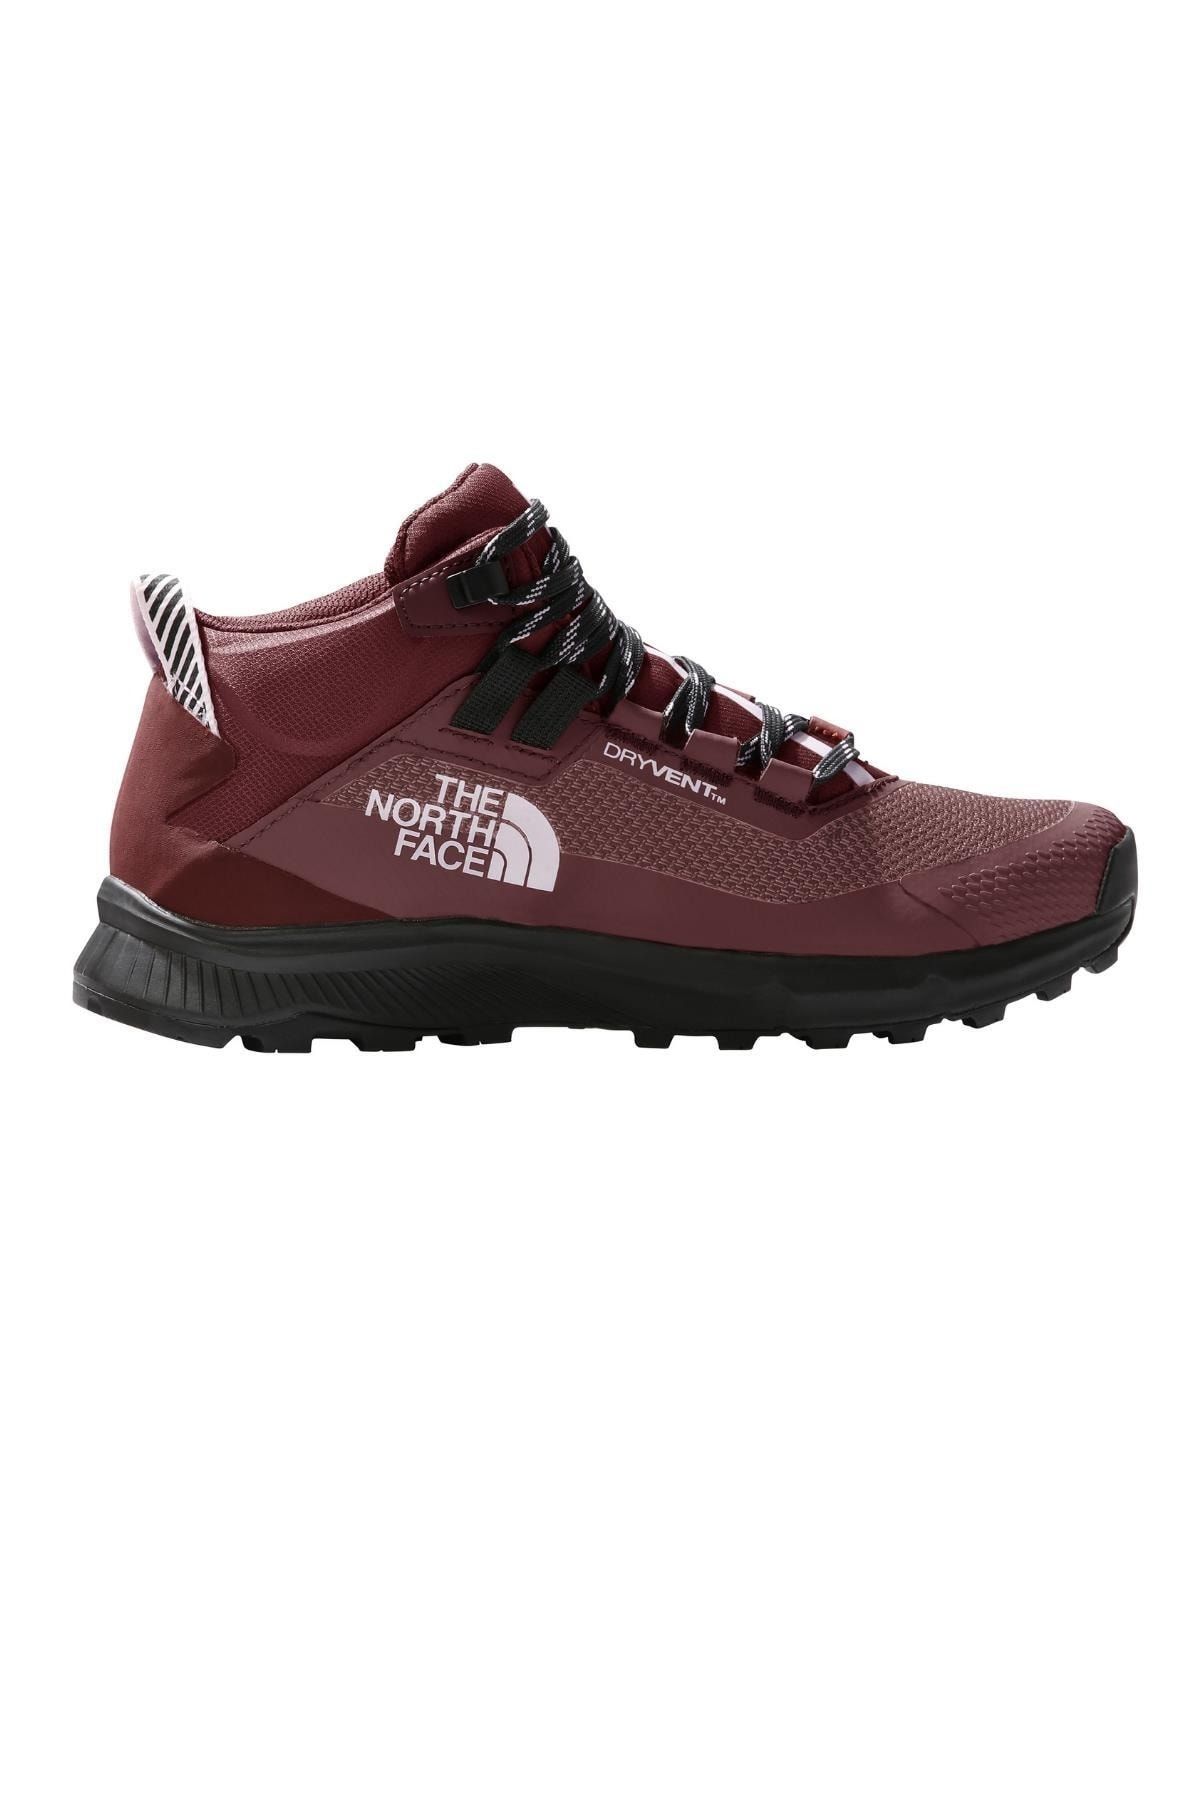 The North Face Cragstone Mid Waterproof Ayakkabı Kadın Kırmızı/siyah